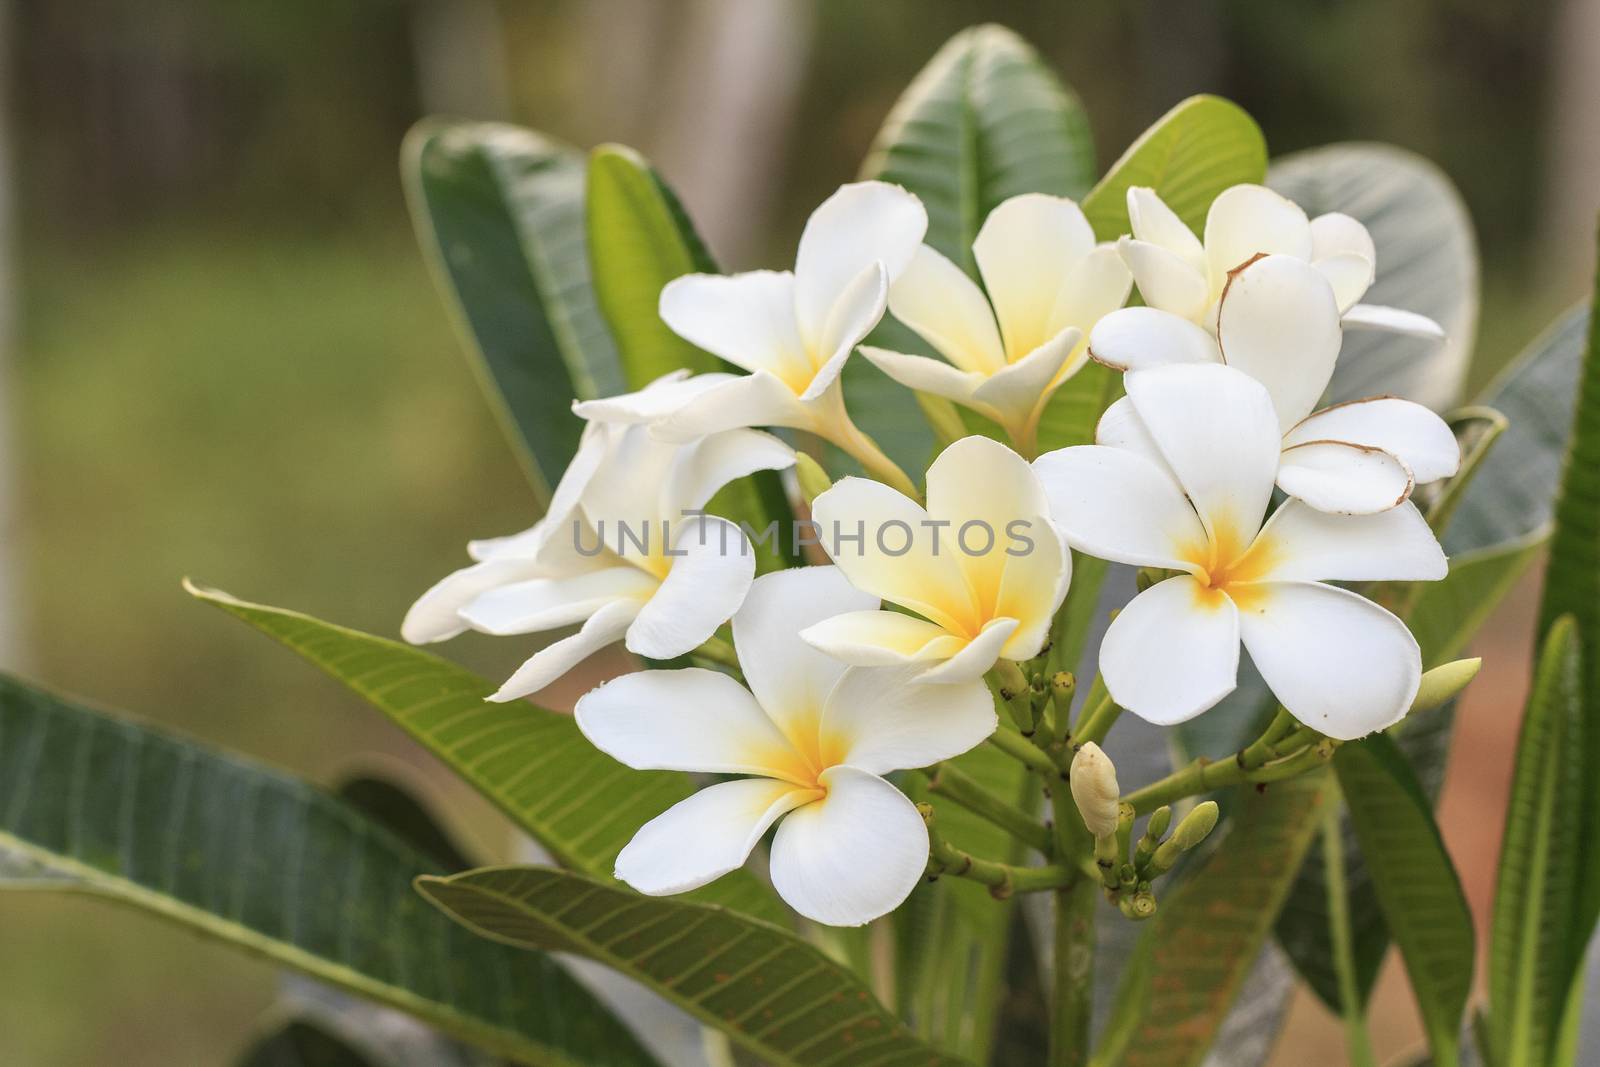 White frangipani flower in tropical garden